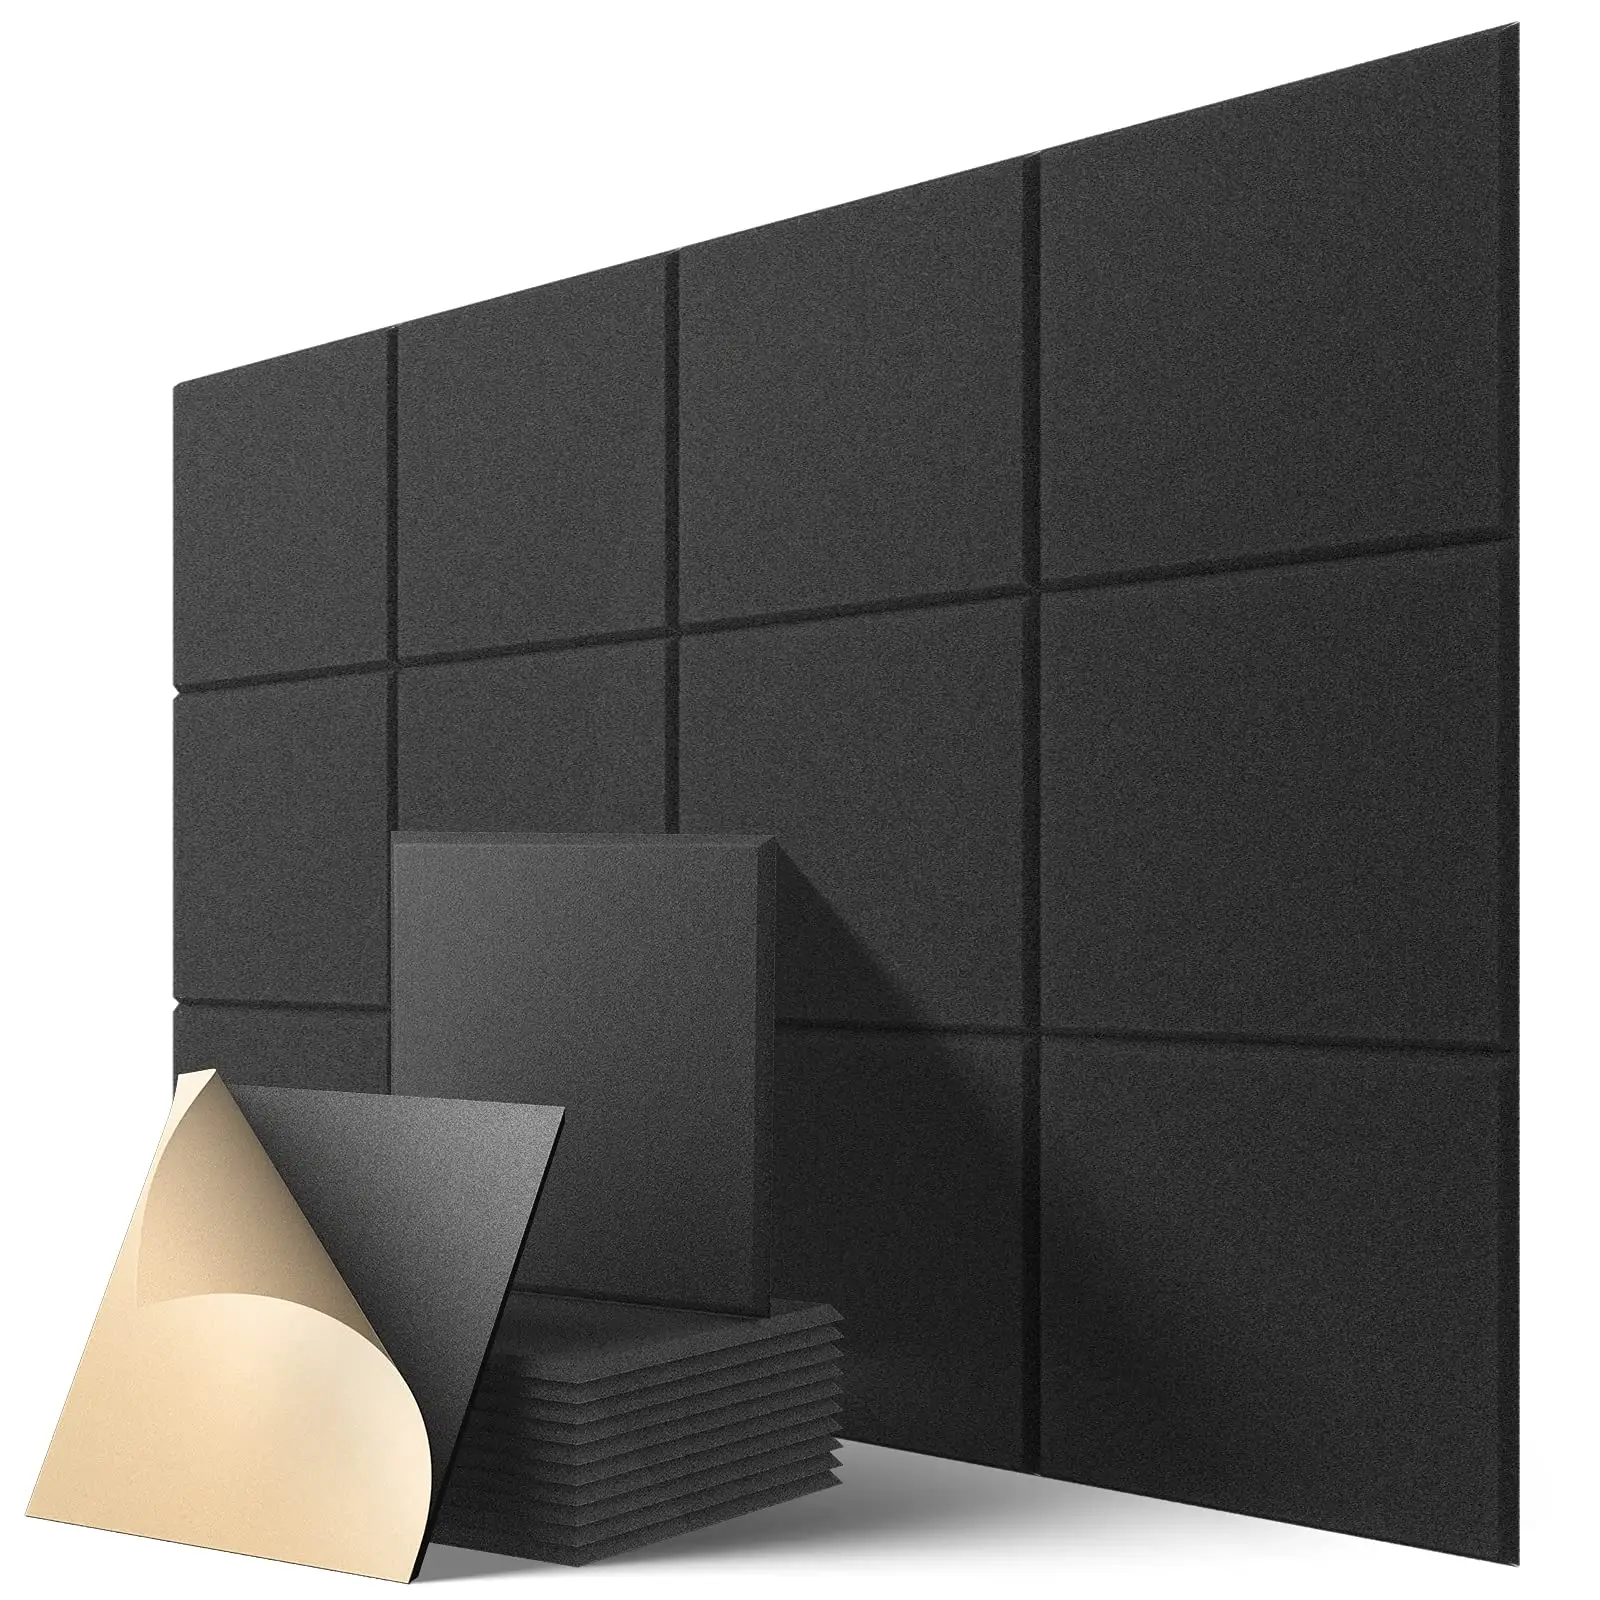 Sound Proofing PET feltro decorativo parede acústica placa som absorvendo material 100% poliéster chama-painel acústico retardador